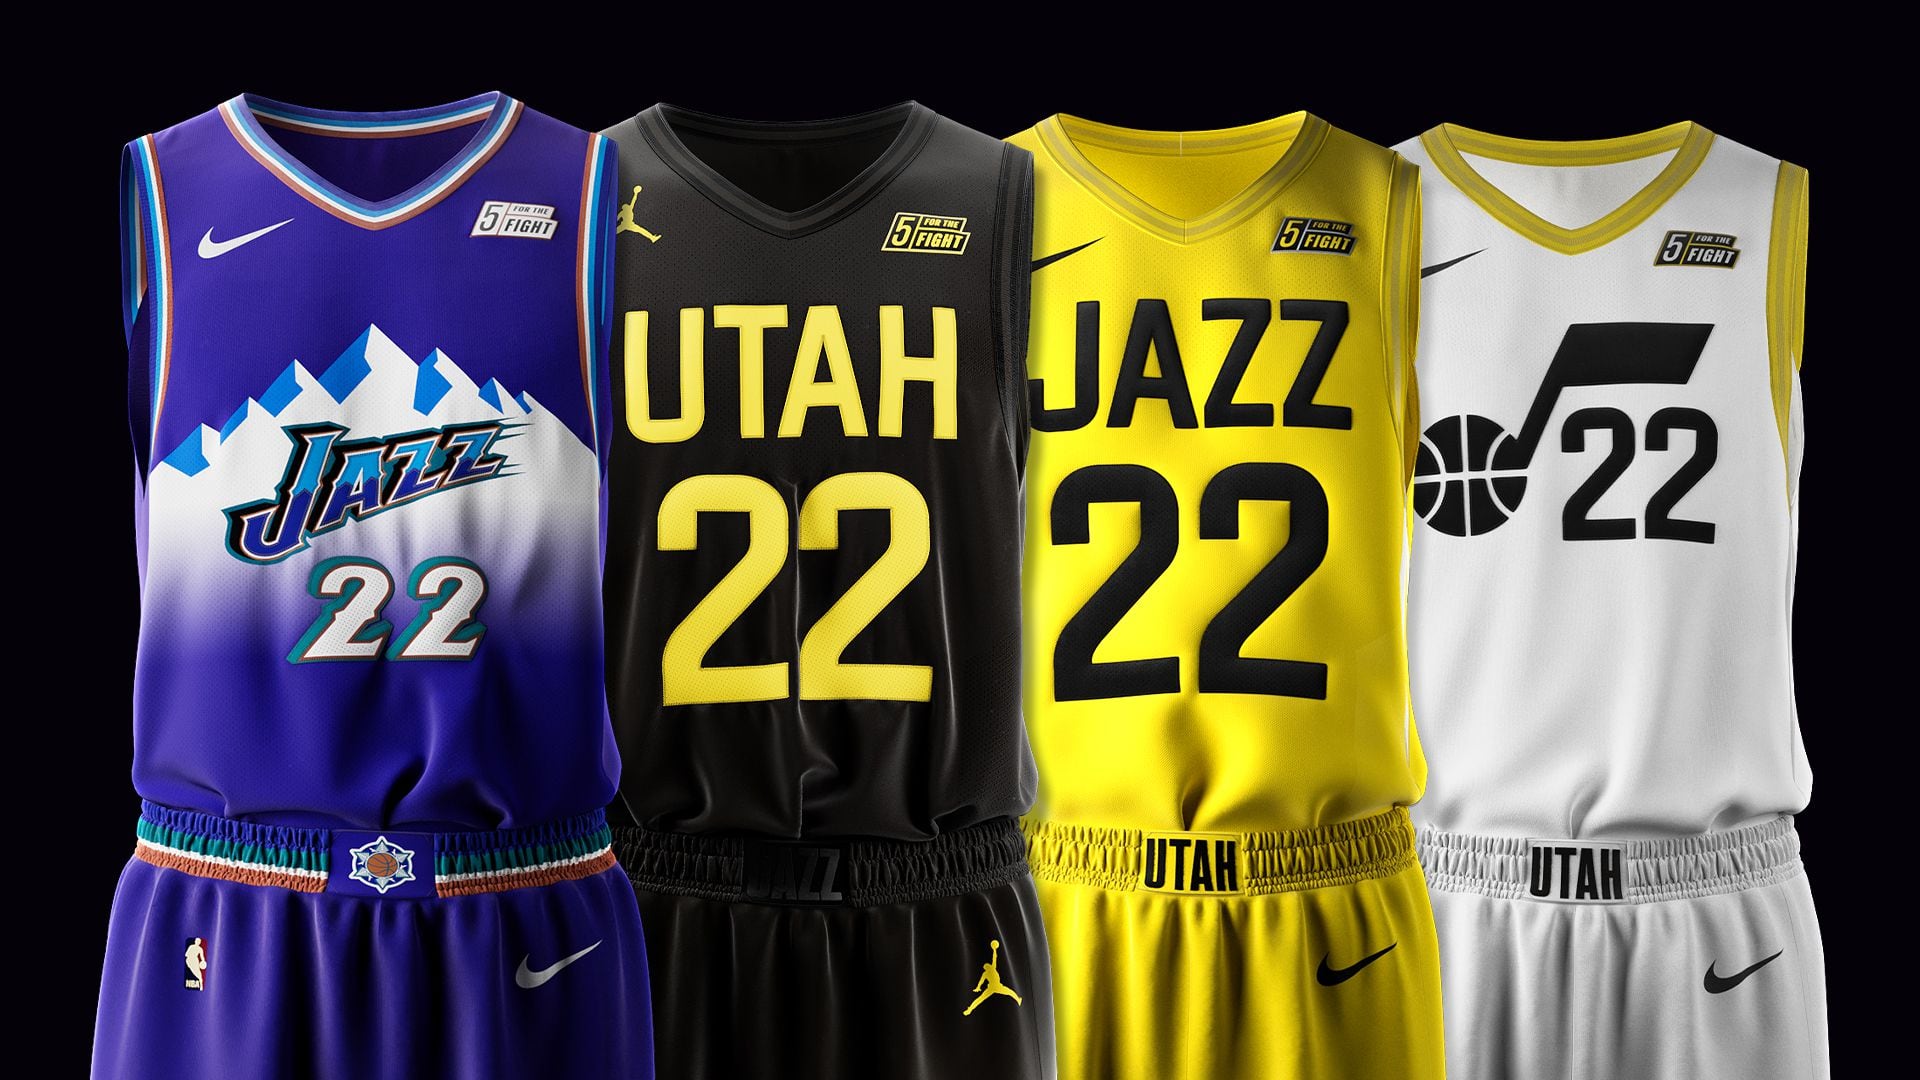 Slic Media - Which new WNBA uniform do you like best? 🗣🏀